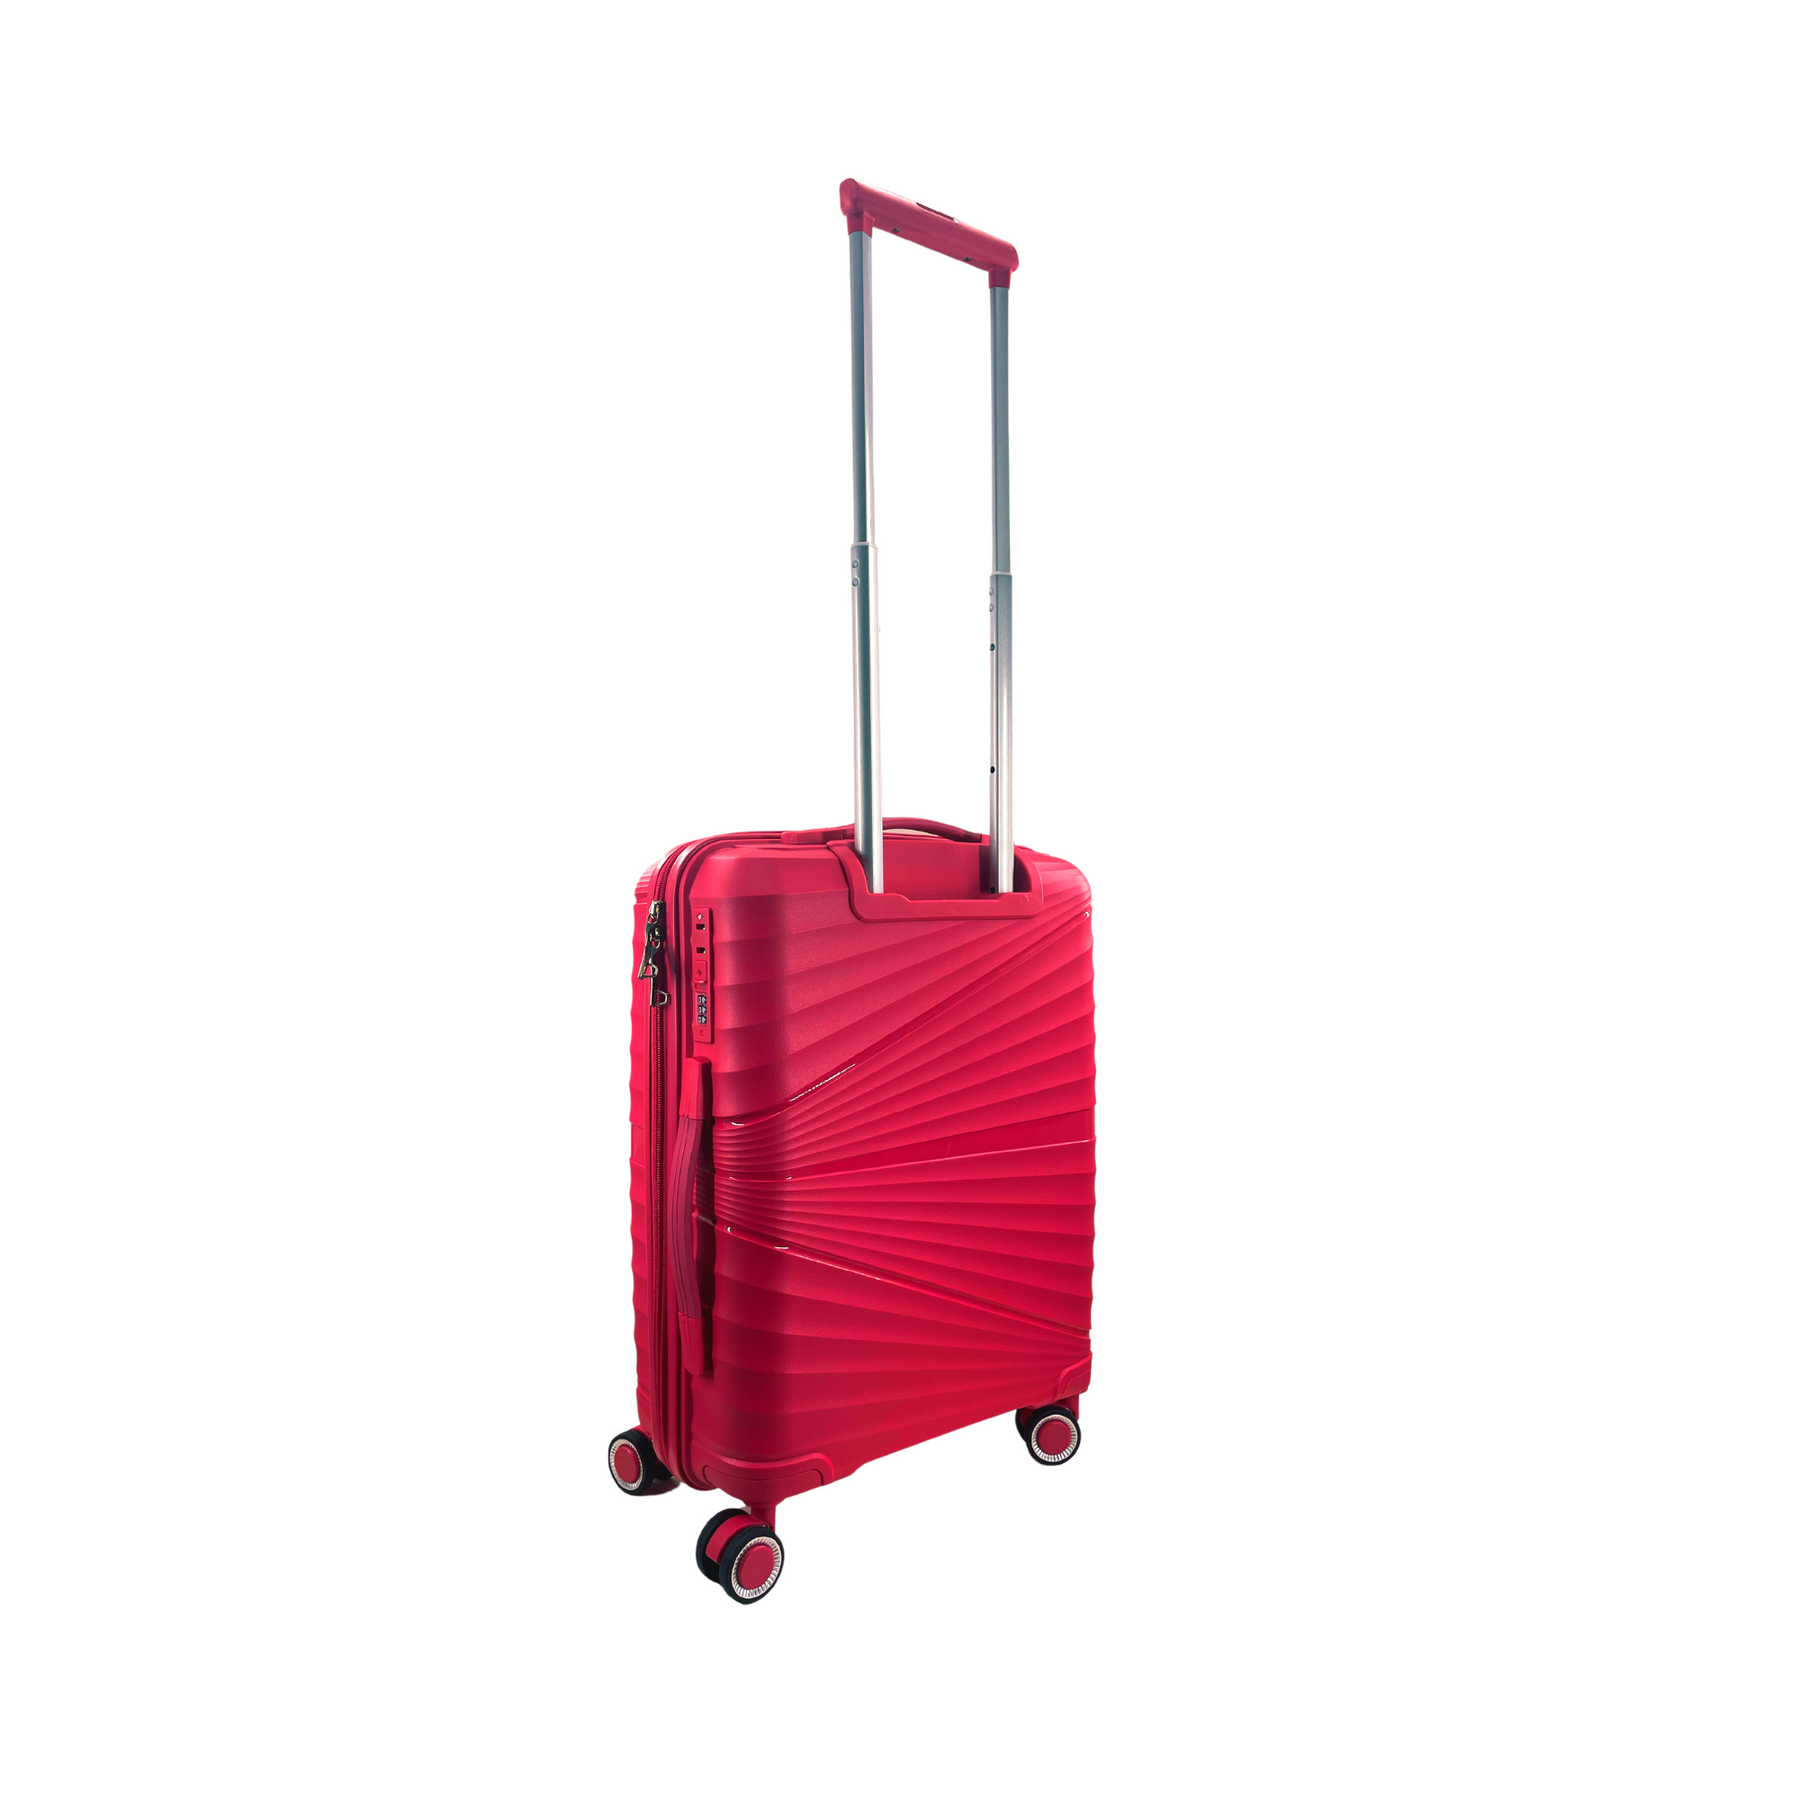 Handbagage in zacht polypropyleenlicht 55x40x25cm met geluk TSA kleine zomer trolley hoge kwaliteit lichtkwaliteit